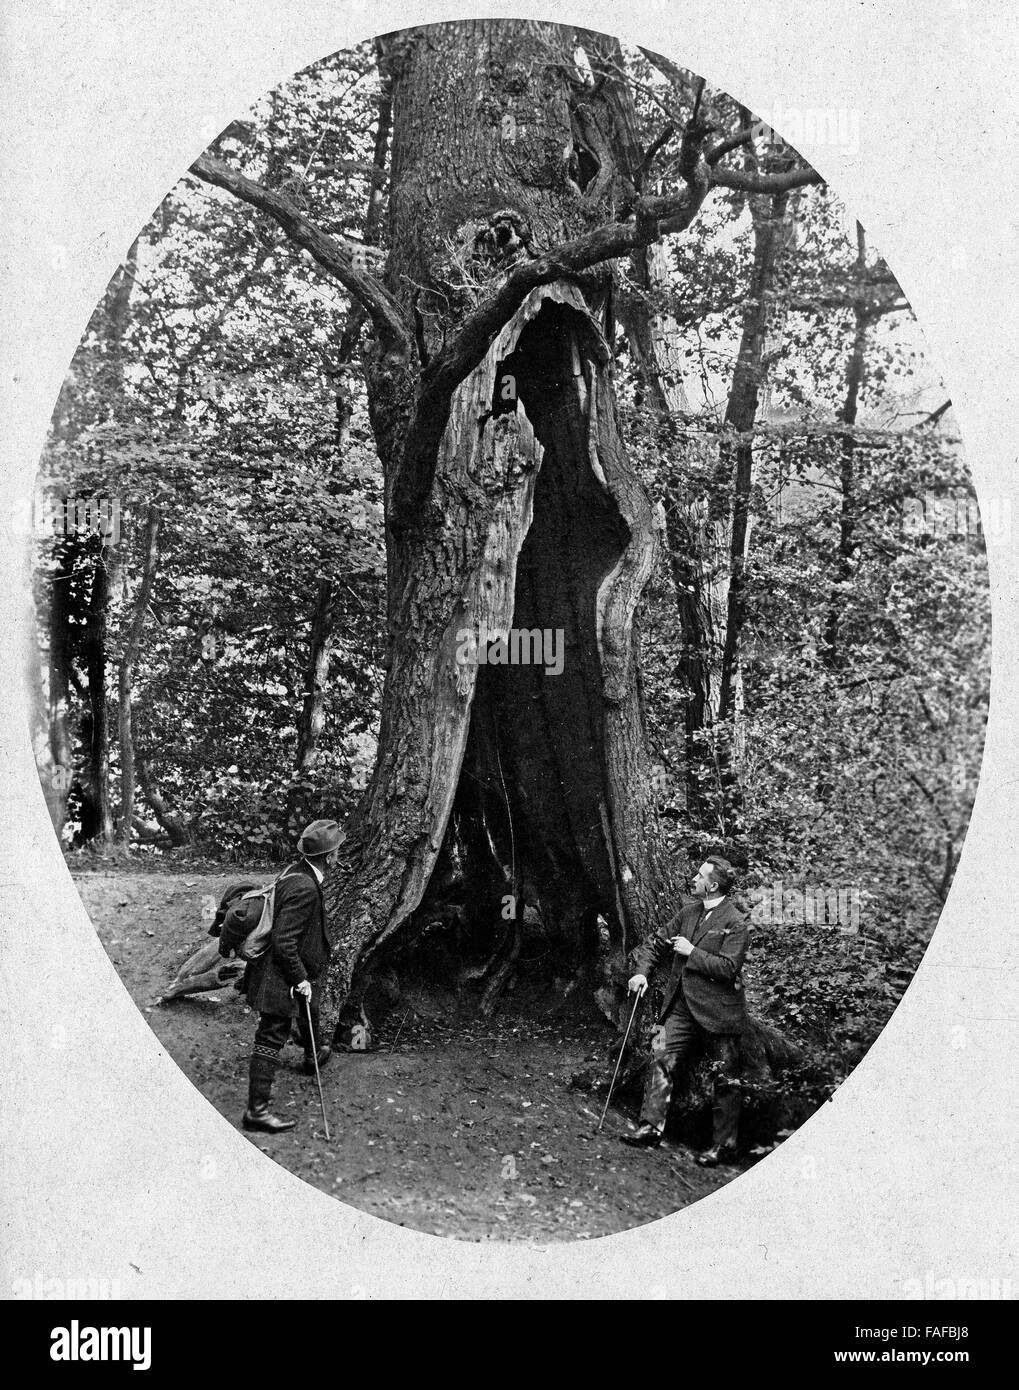 Hohle Eiche im Park à Brühl, Deutschland 1920er Jahre. Arbre de chêne creux dans un parc à Bruehl, Allemagne 1920. Banque D'Images